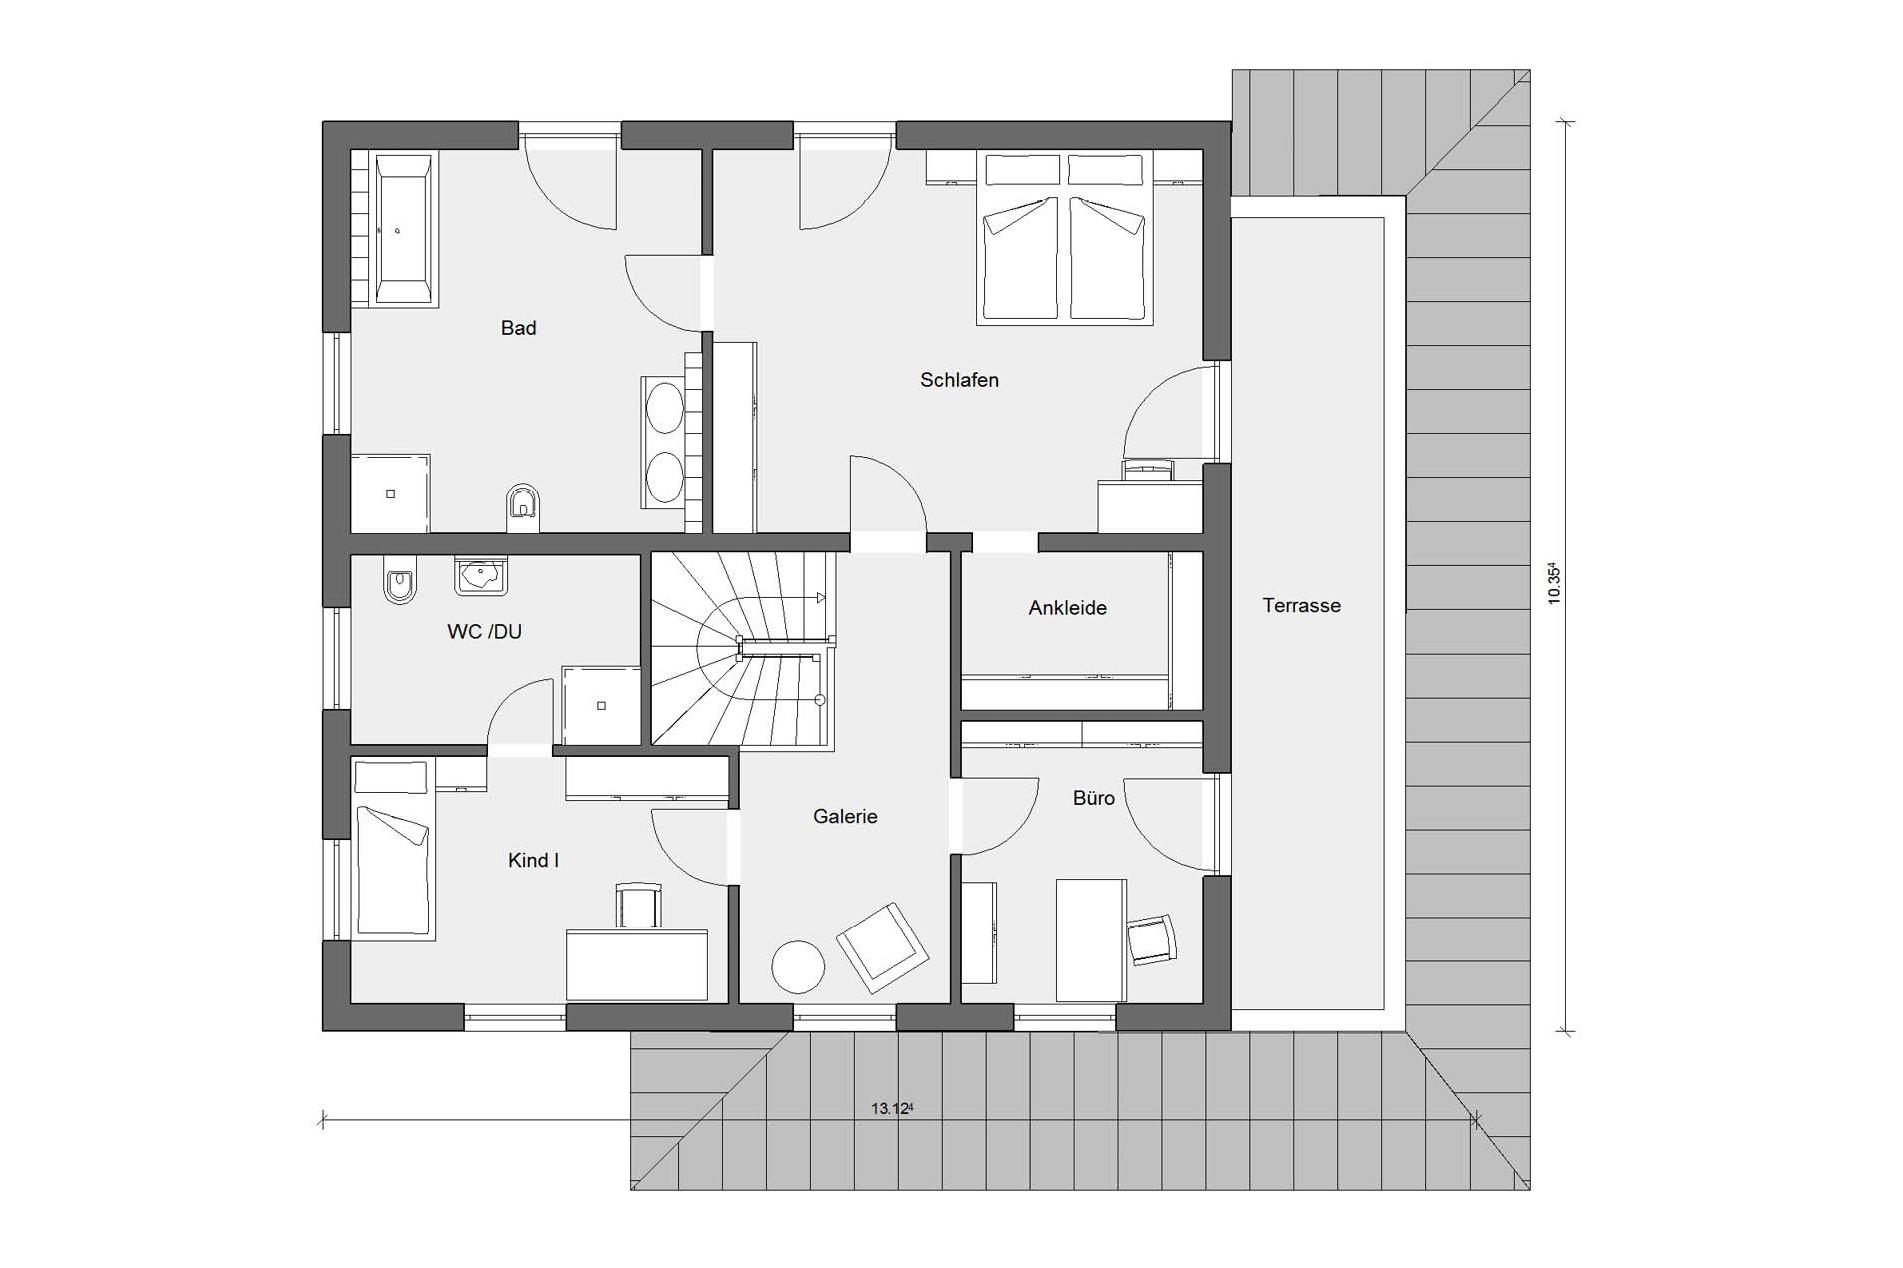 Floor plan attic mediterranean villa E 20-204.1